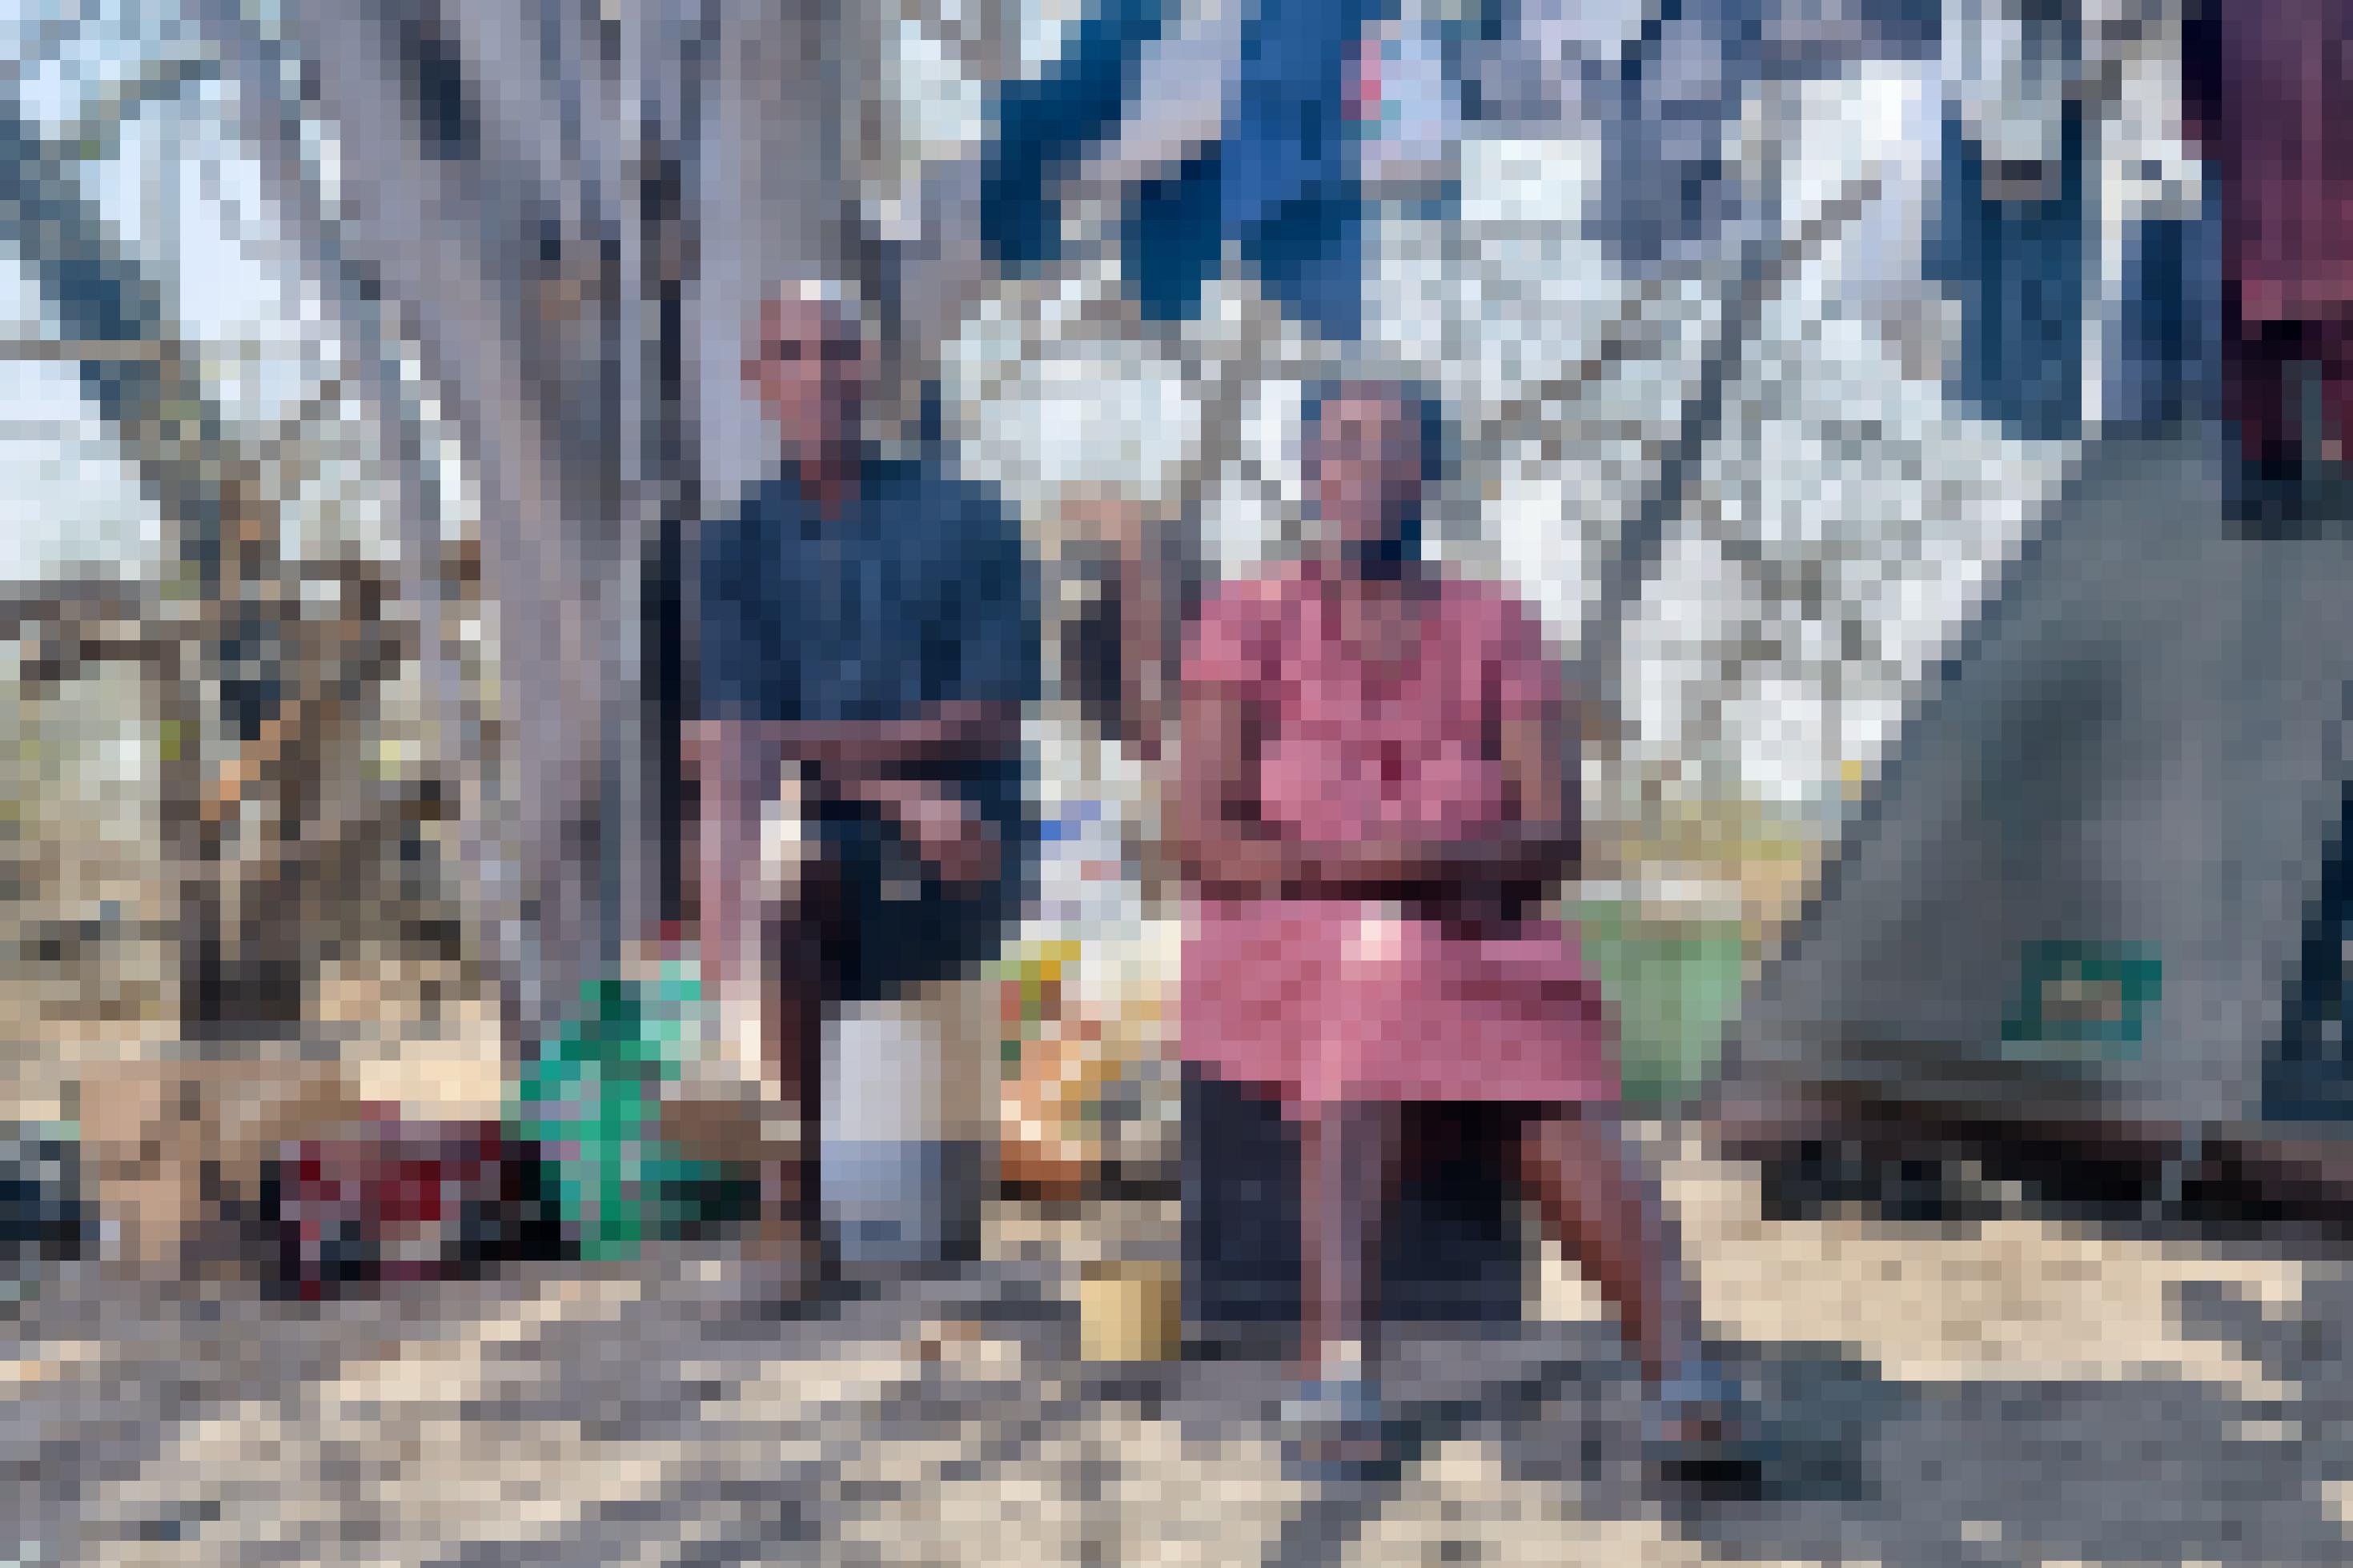 Das Paar sitzt auf zwei Plastikcontainern vor einem Baum und einer Wäscheleine in ihrem Zeltlager. Er trägt kurze Hosen, sie ein rot-weiß-kariertes Kleid